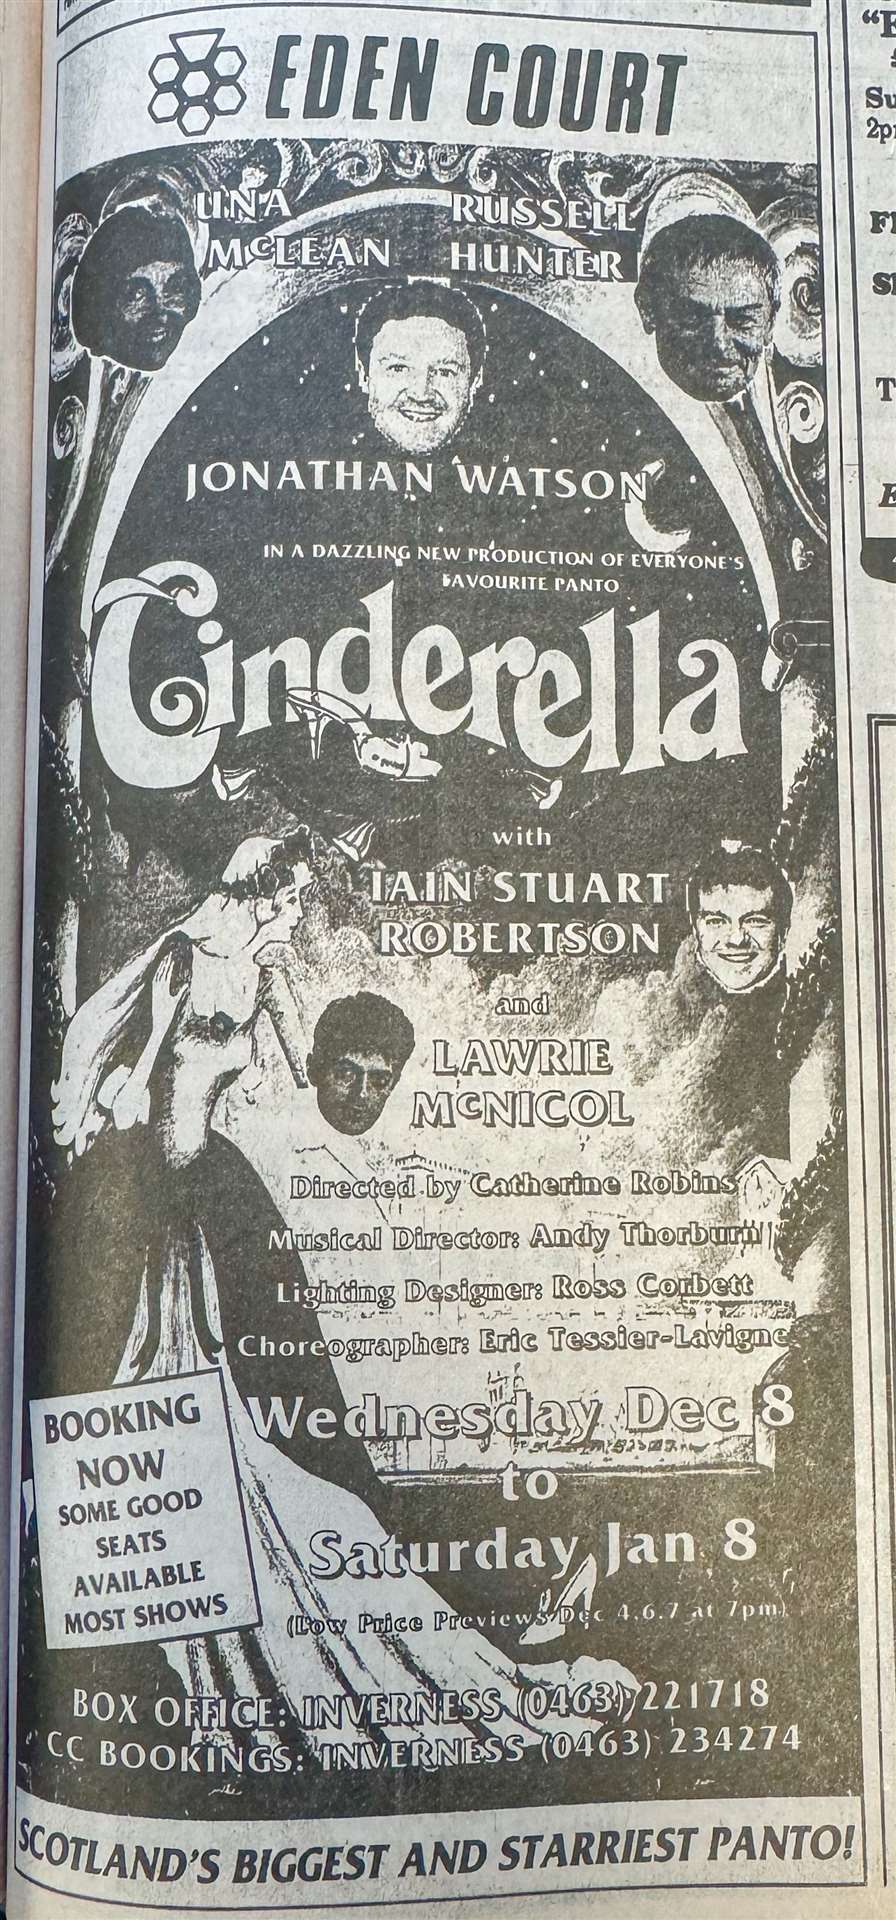 Cinderella was showing at Eden Court in Inverness.